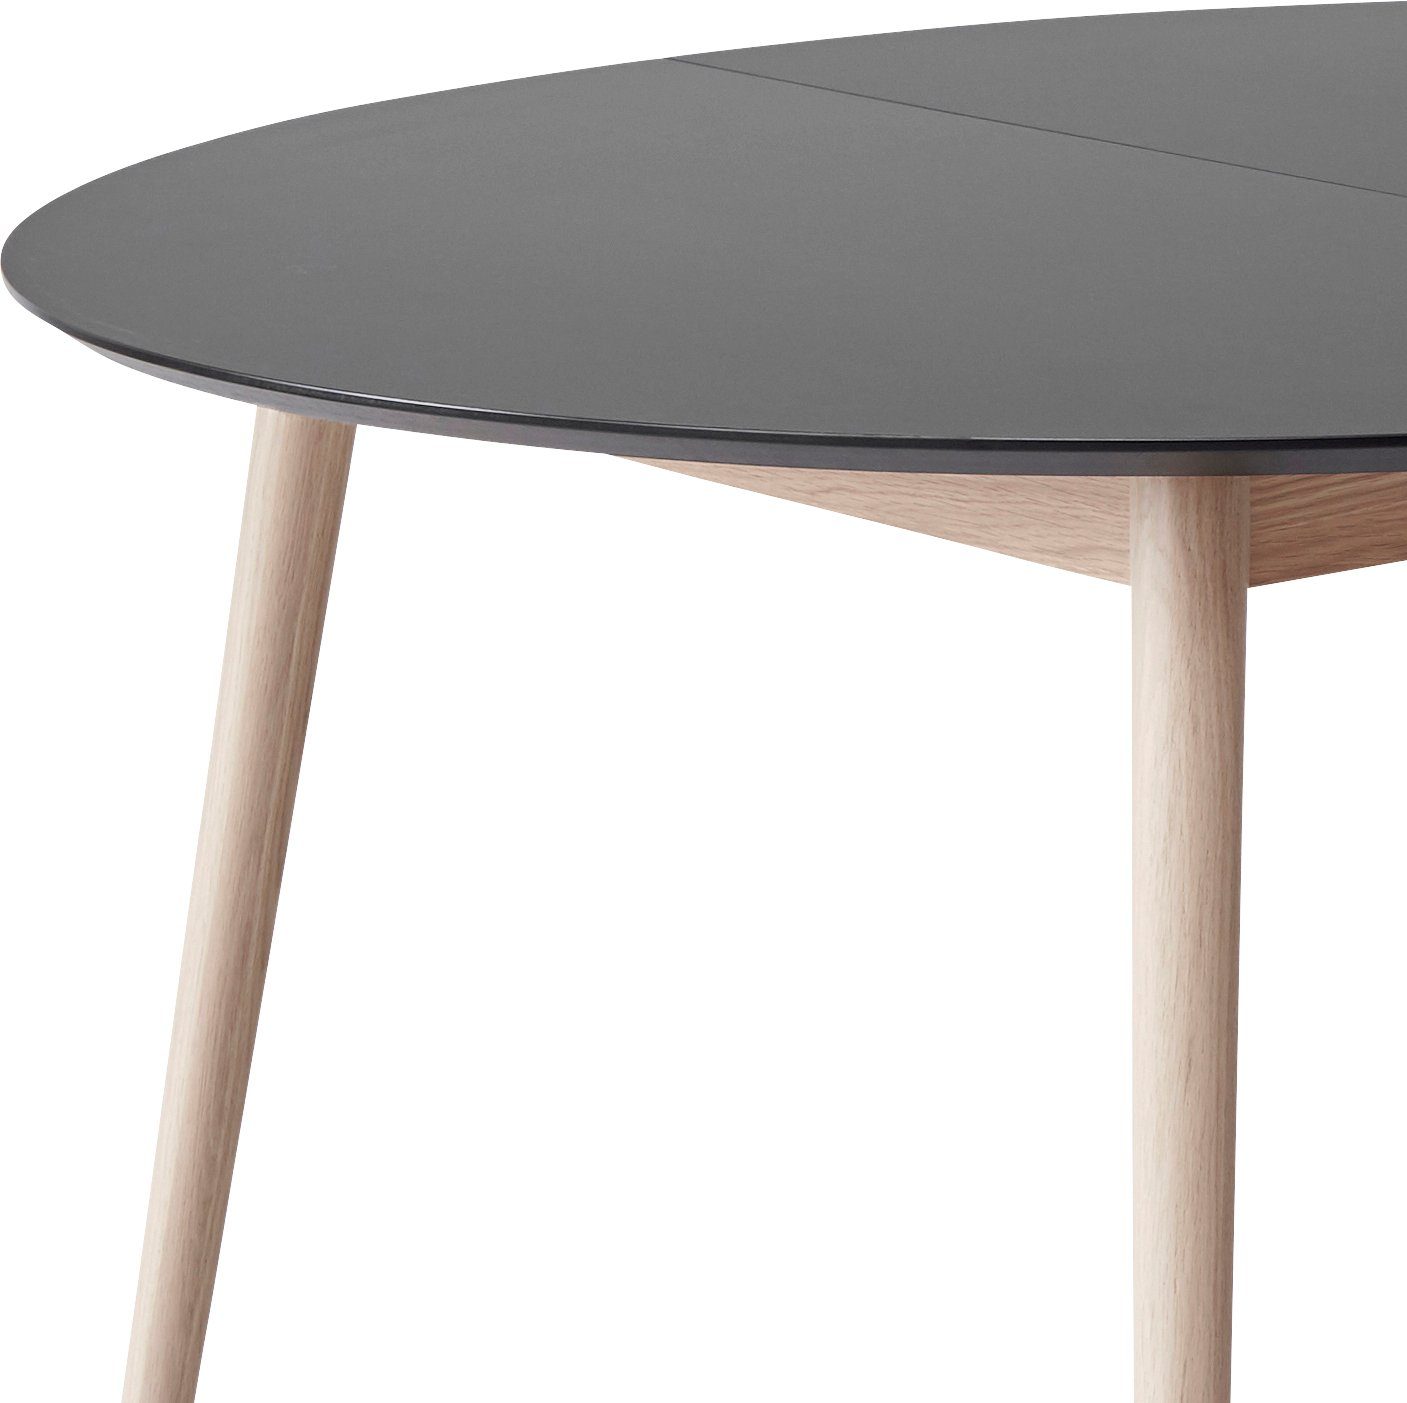 Hammel Furniture Esstisch Tischplatte Meza aus Hammel, MDF/Laminat, cm, Ø135(231) Graphit runde Massivholzgestell by